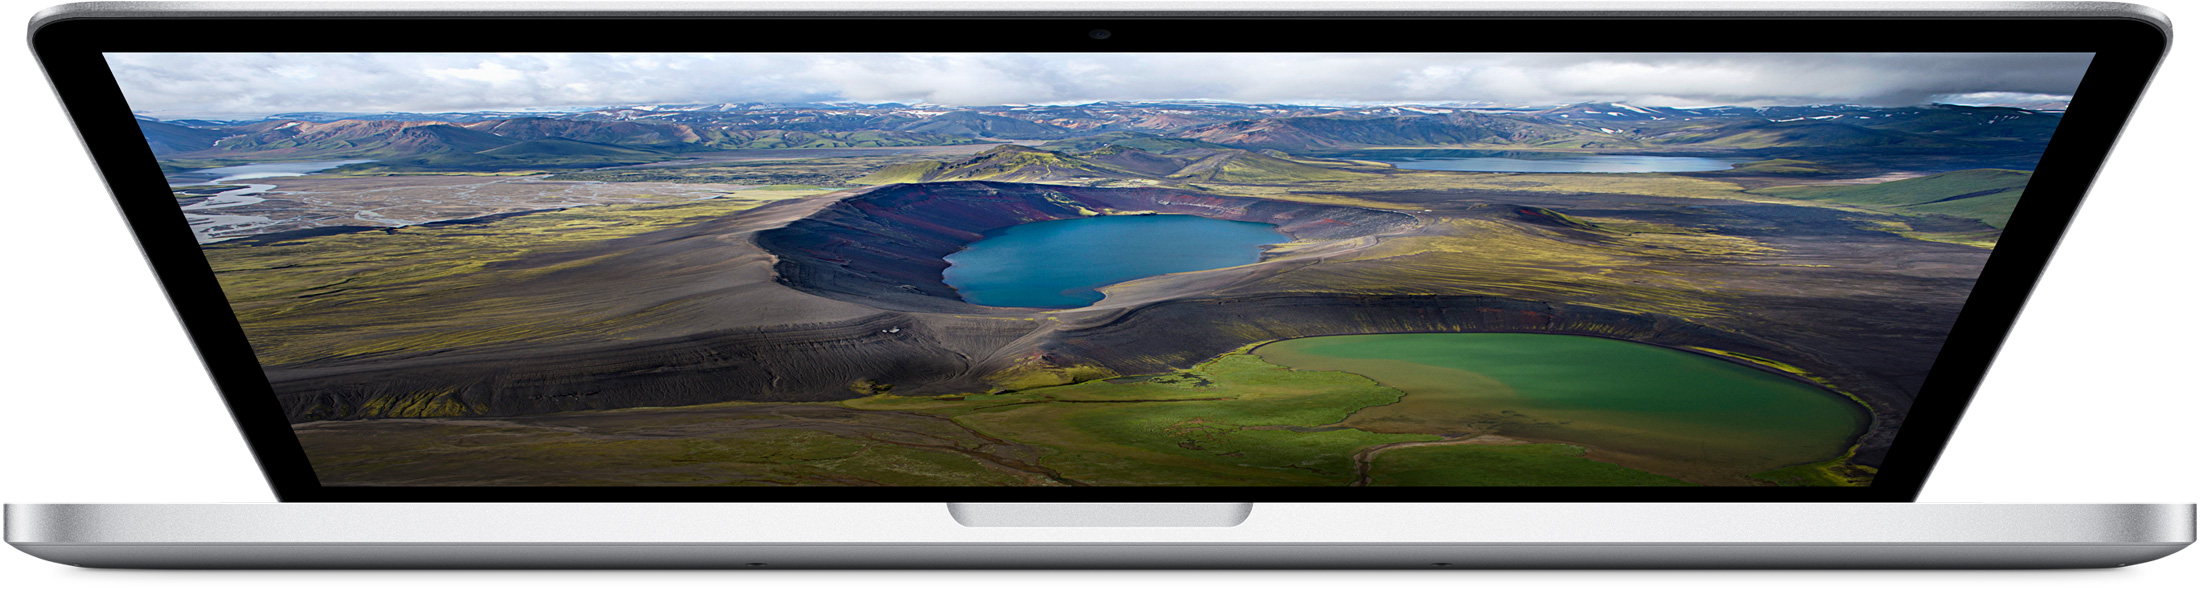 MacBook Pro dengan tampilan Retina